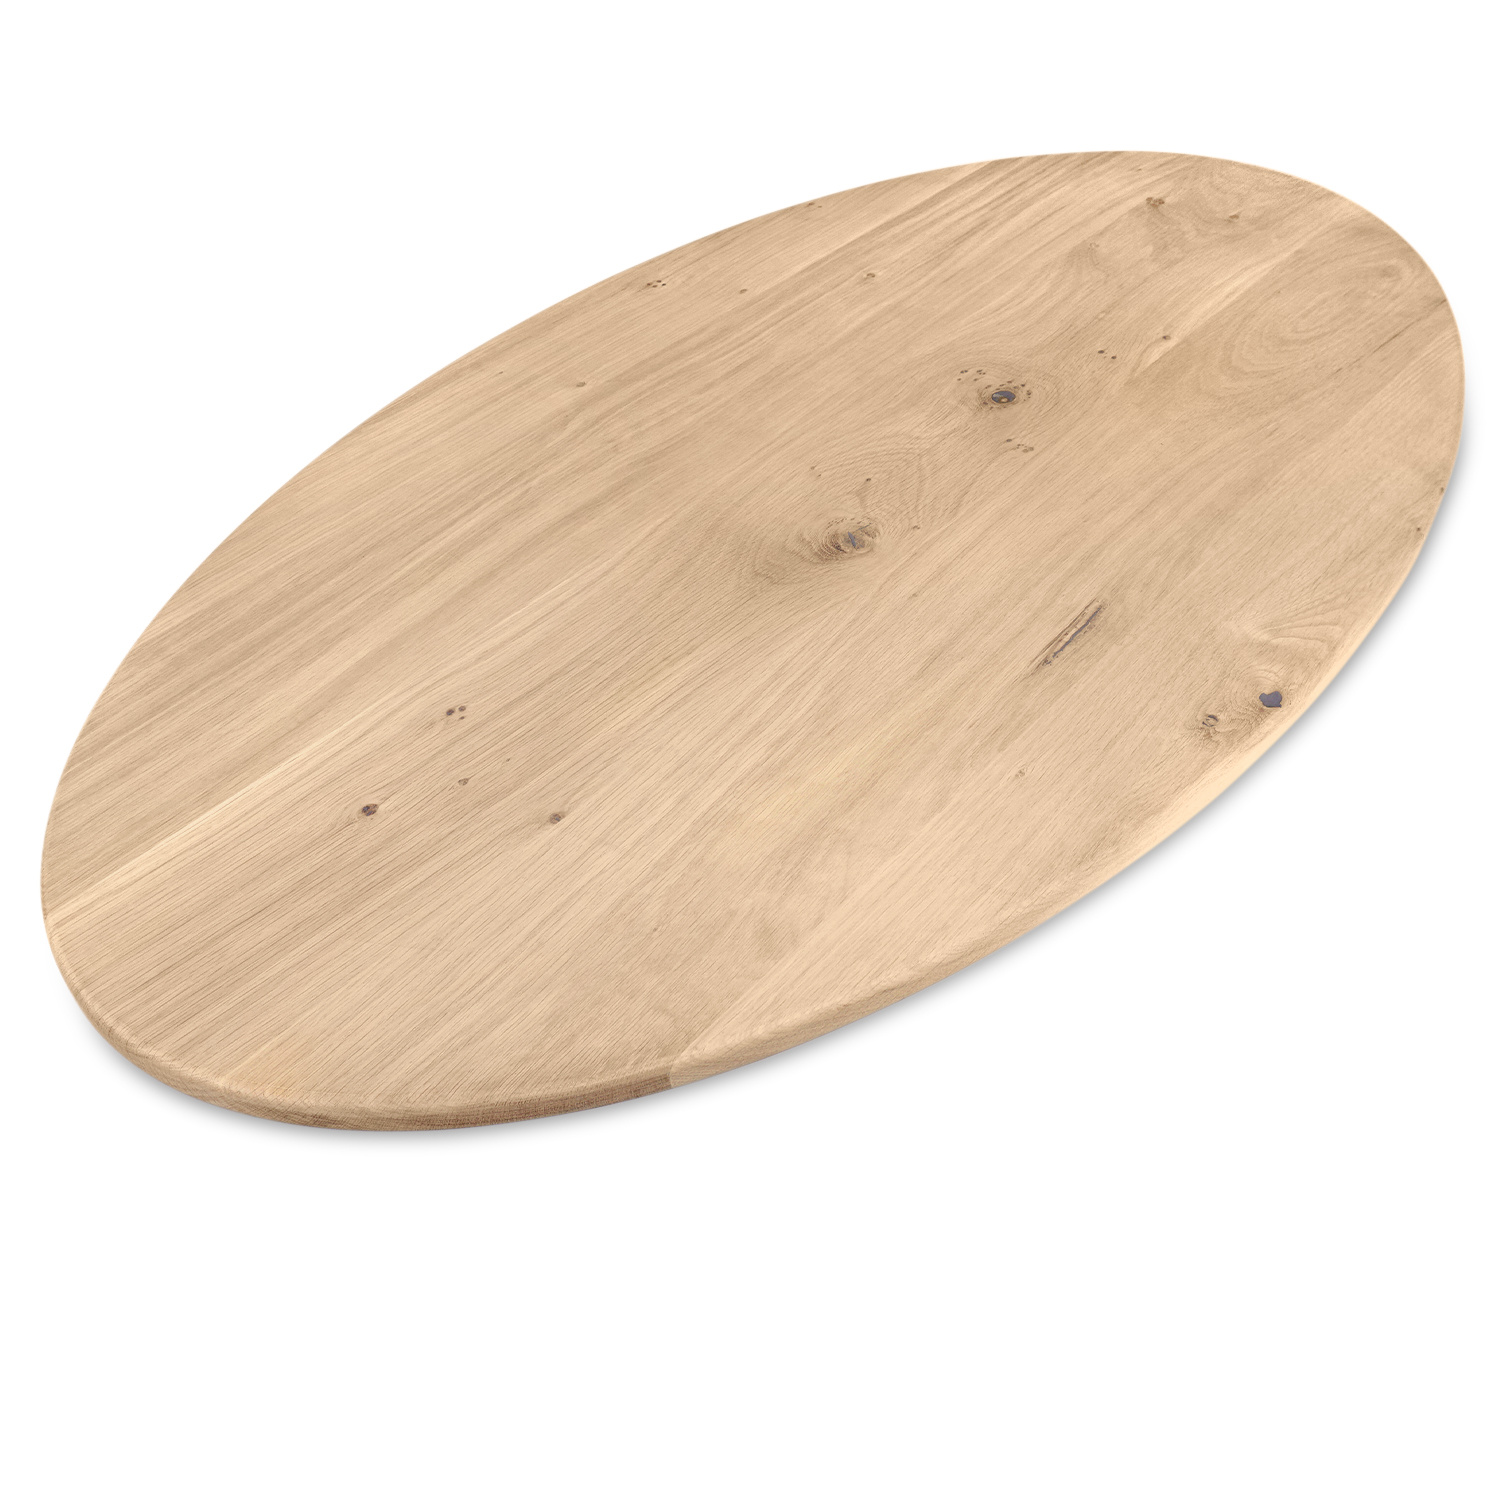  Ovaal eiken tafelblad op maat - 2,5 cm dik (1-laag) - extra rustiek Europees eikenhout - met extra brede lamellen (circa 14-20 cm)nhout - verlijmd kd 8-12% - 40-117x80-247 cm